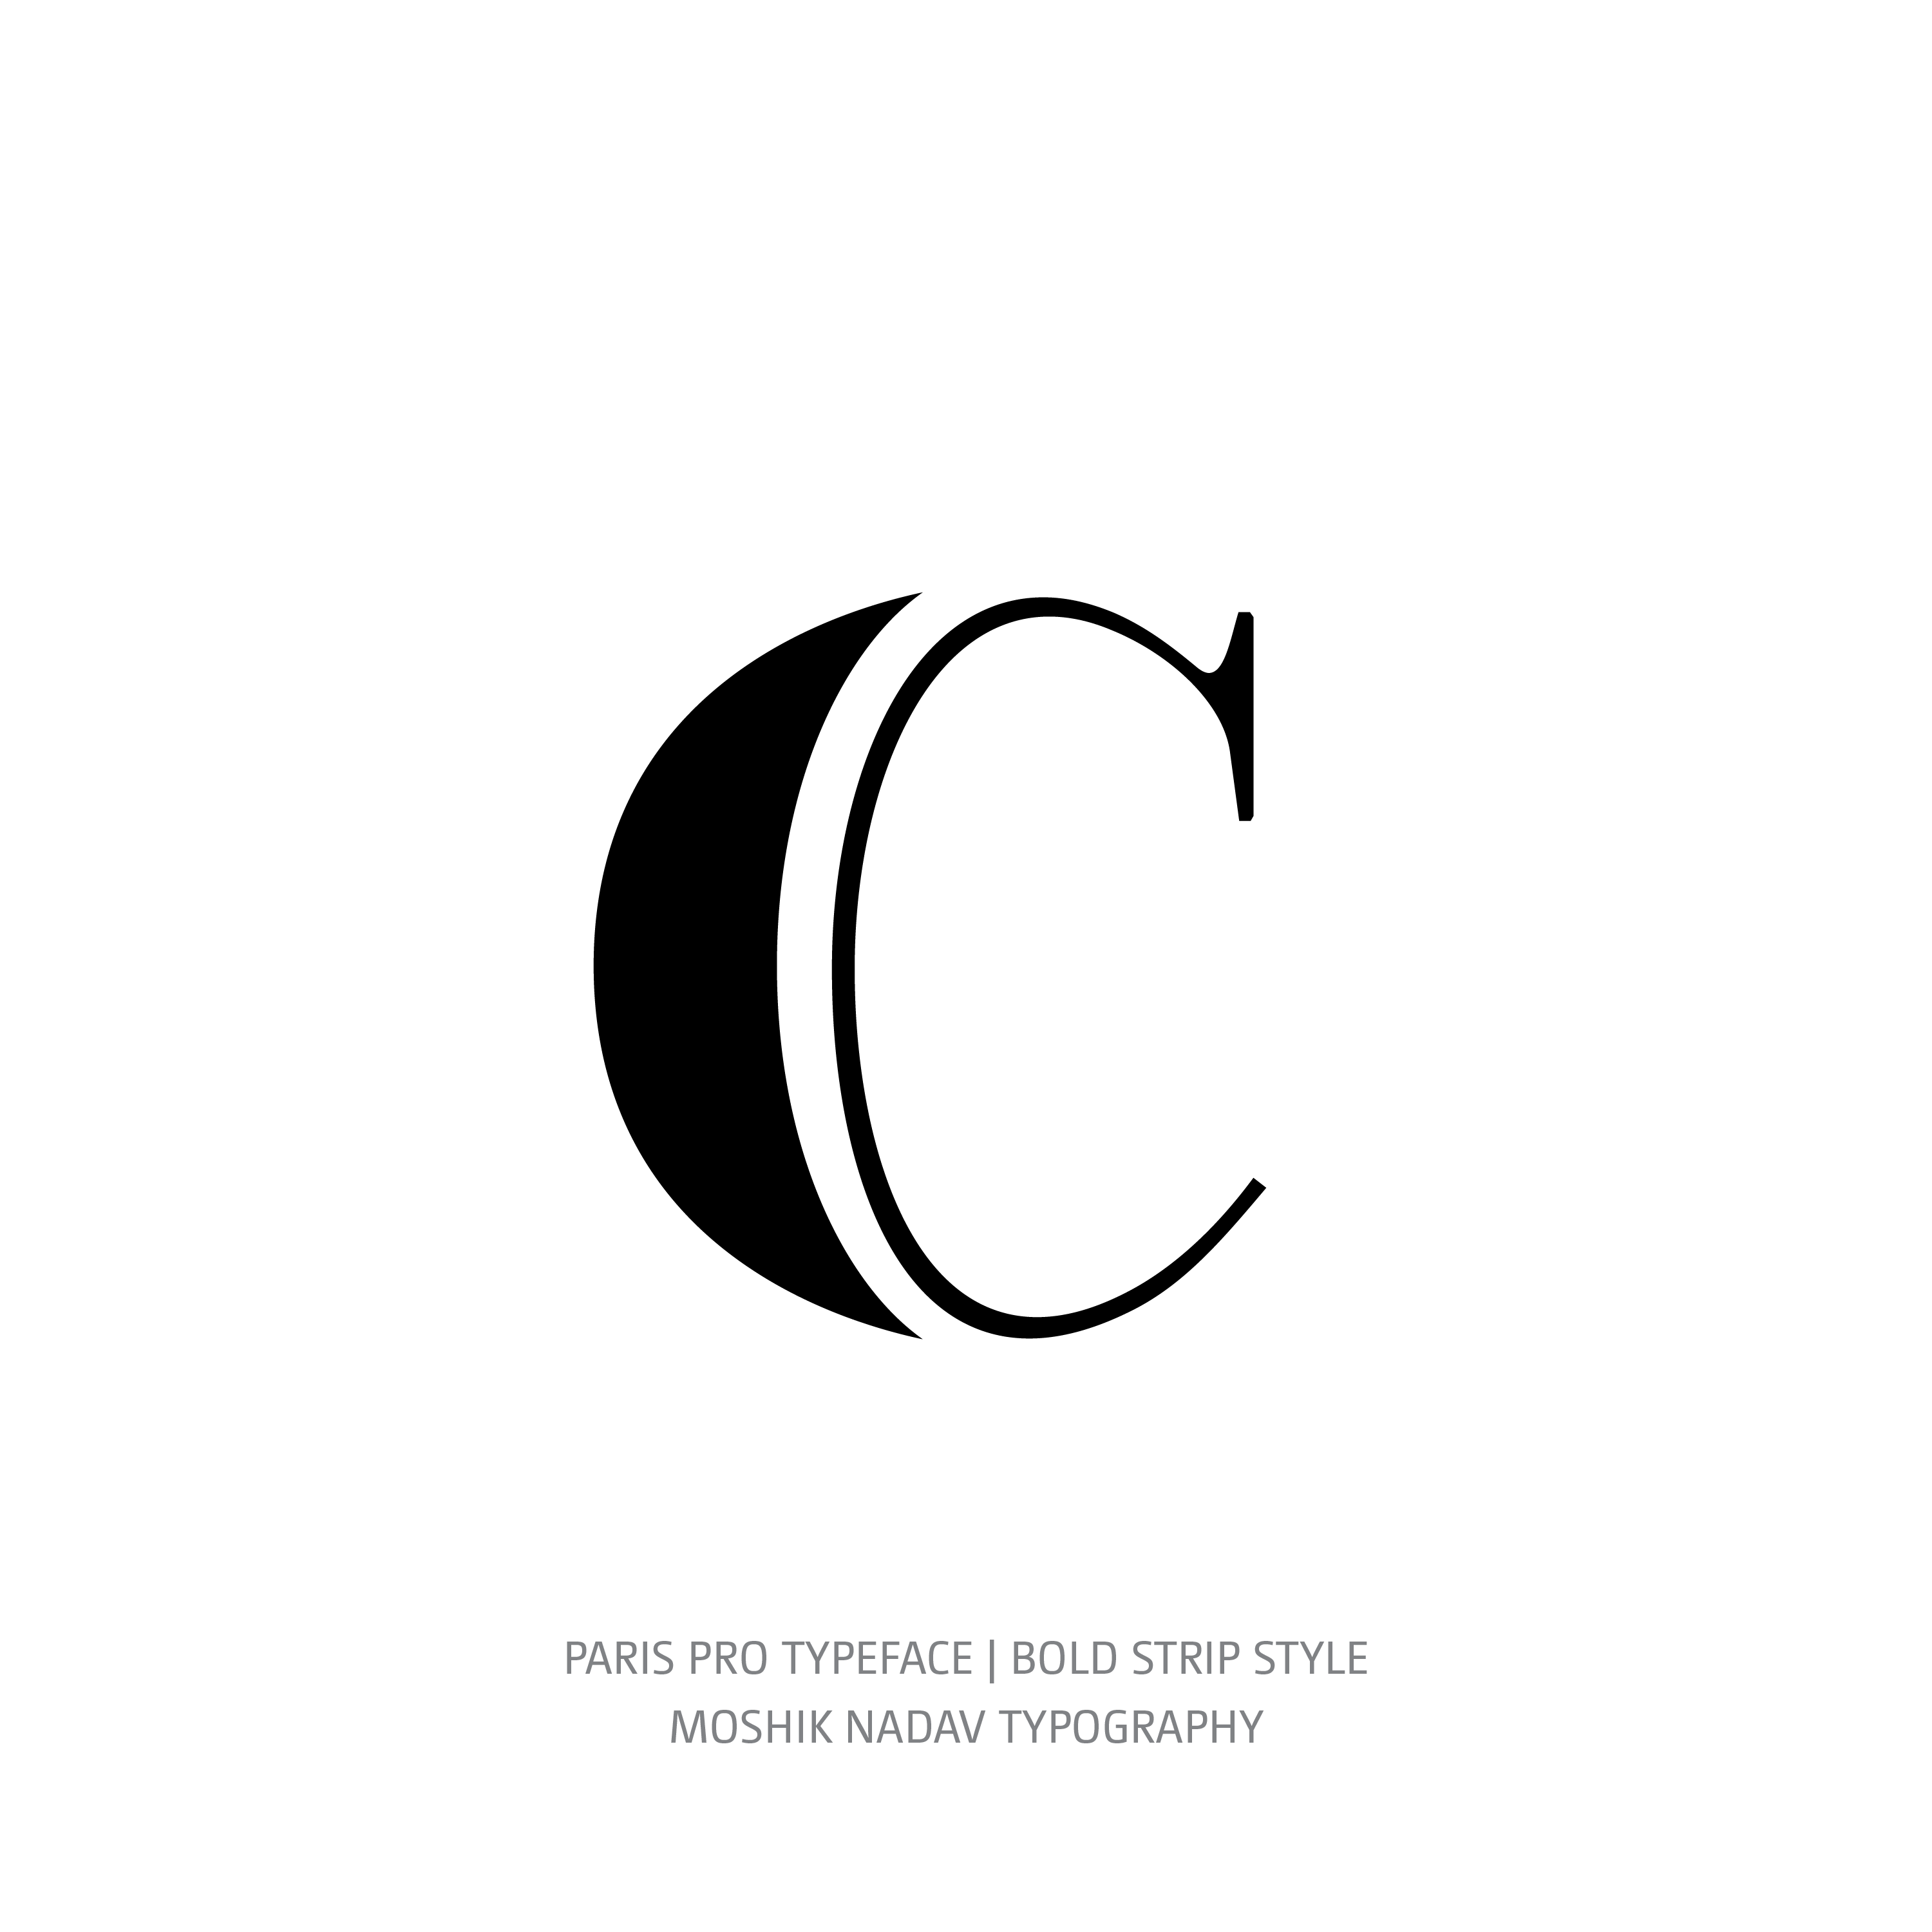 Paris Pro Typeface Bold Strip c